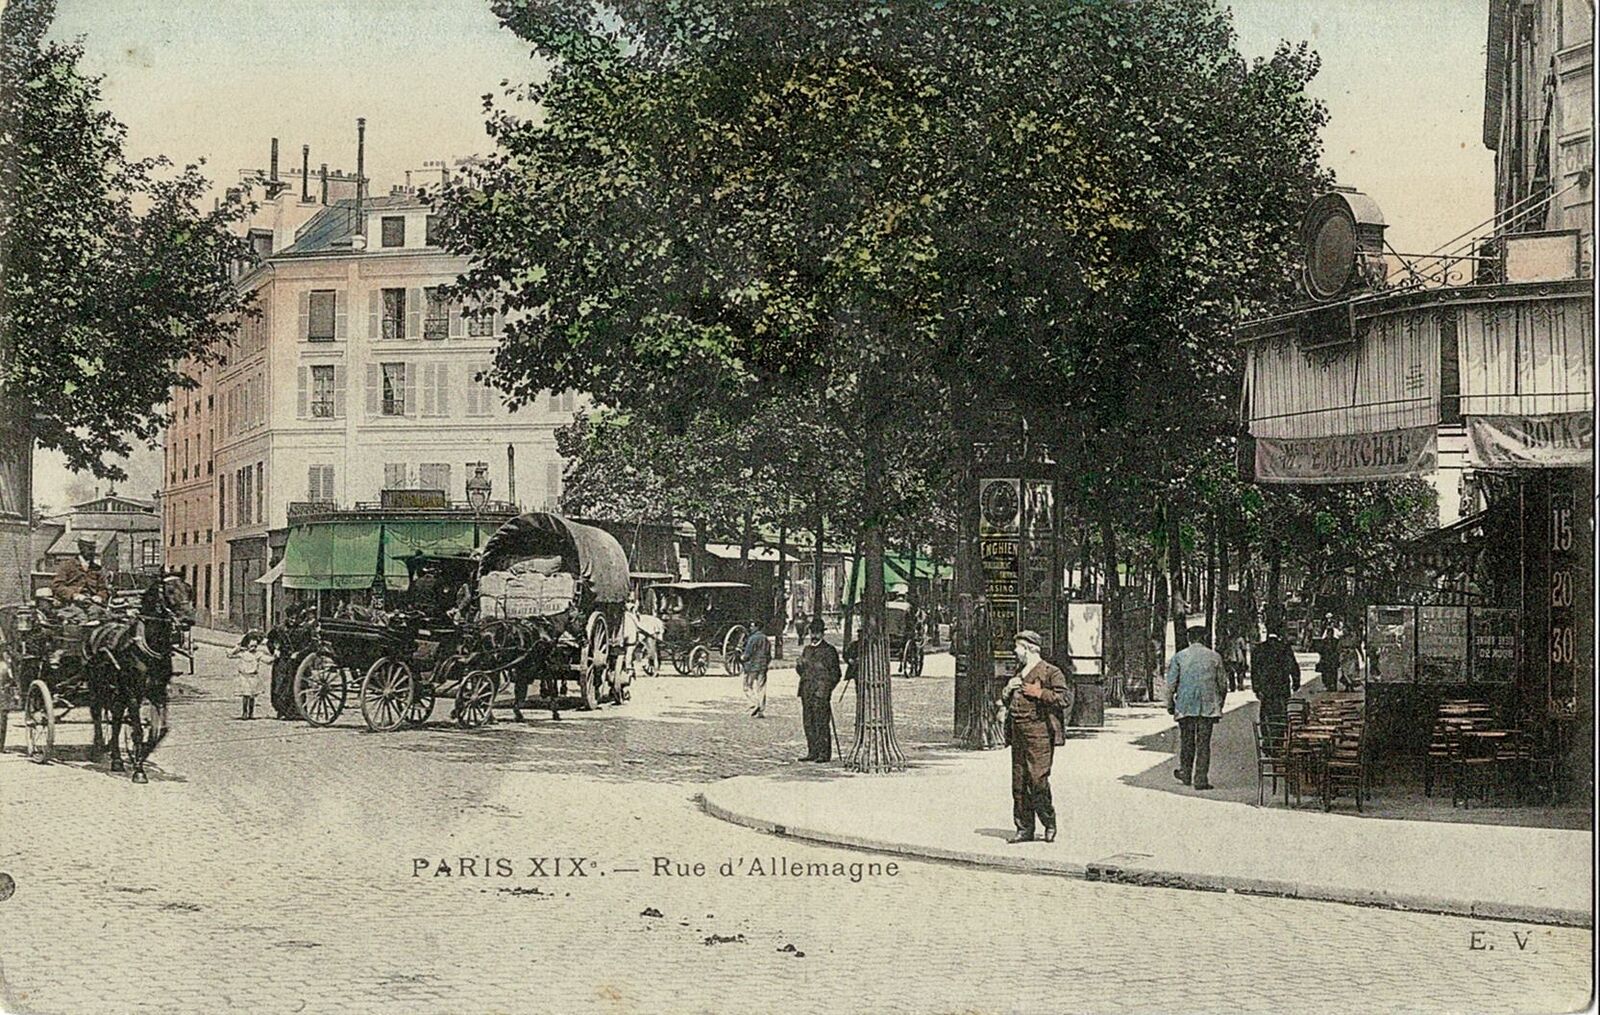 CPA - Paris 19th century - Rue d'Deutschland